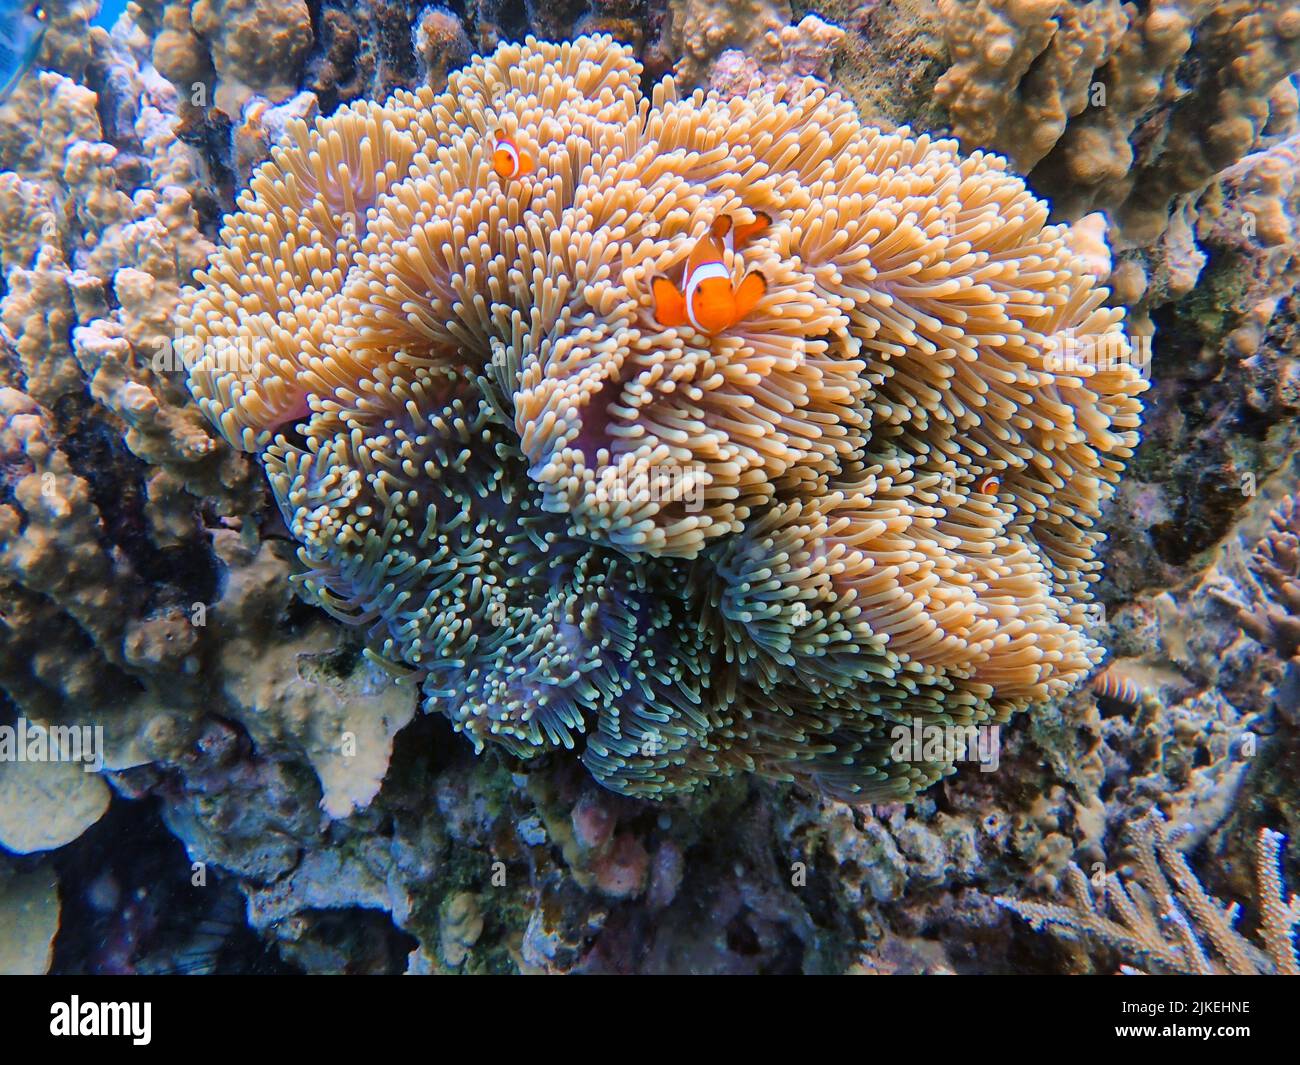 Indonesia Islas Anambas - Pez payaso y Anemona de Mar - Amphiprioninae Foto de stock